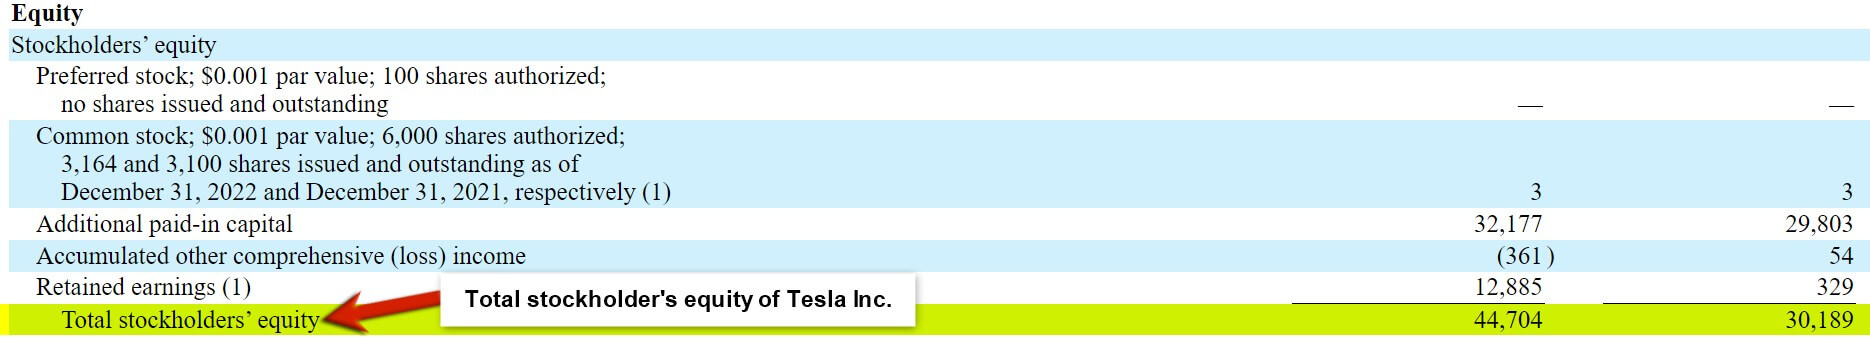 total stockholder's equity Tesla